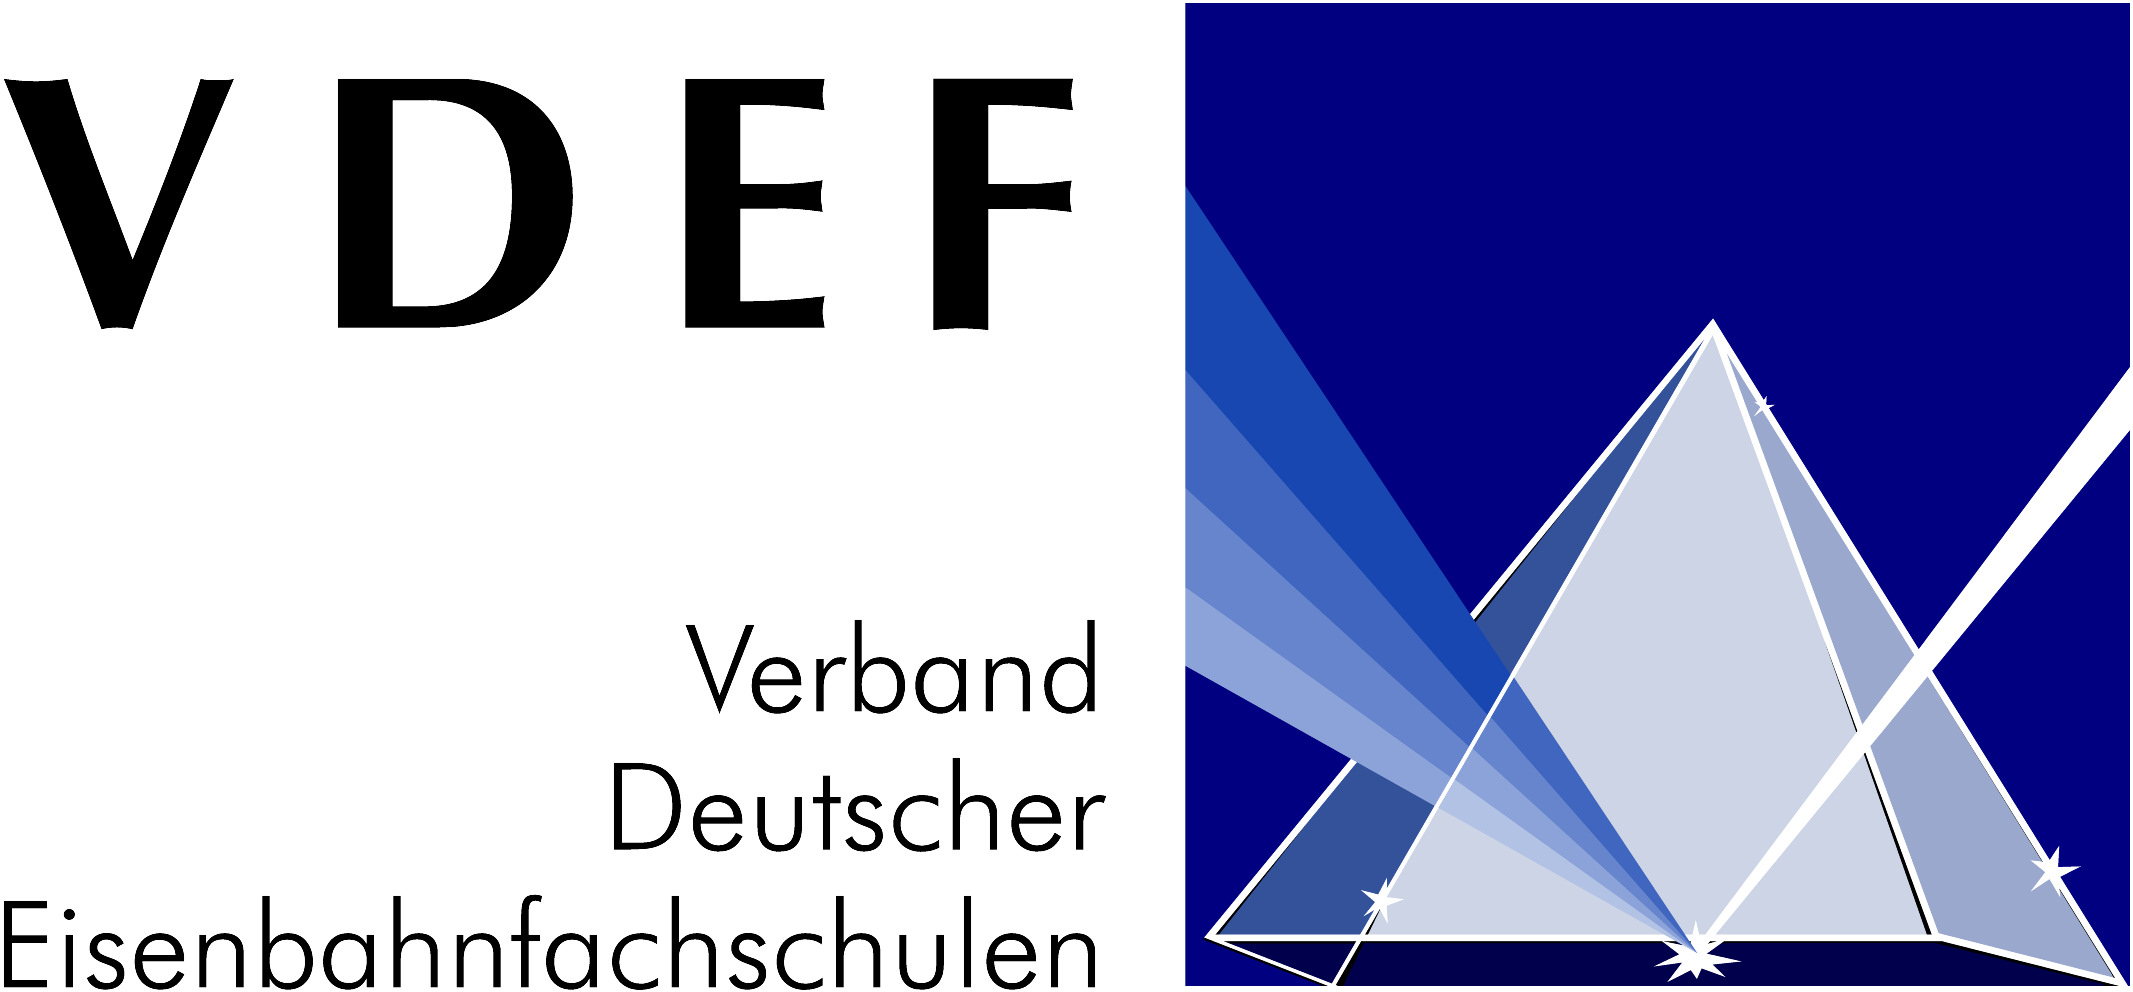 VDEF Verband Deutscher Eisenbahnfachschulen e. V. Bildungszentrum Berlin